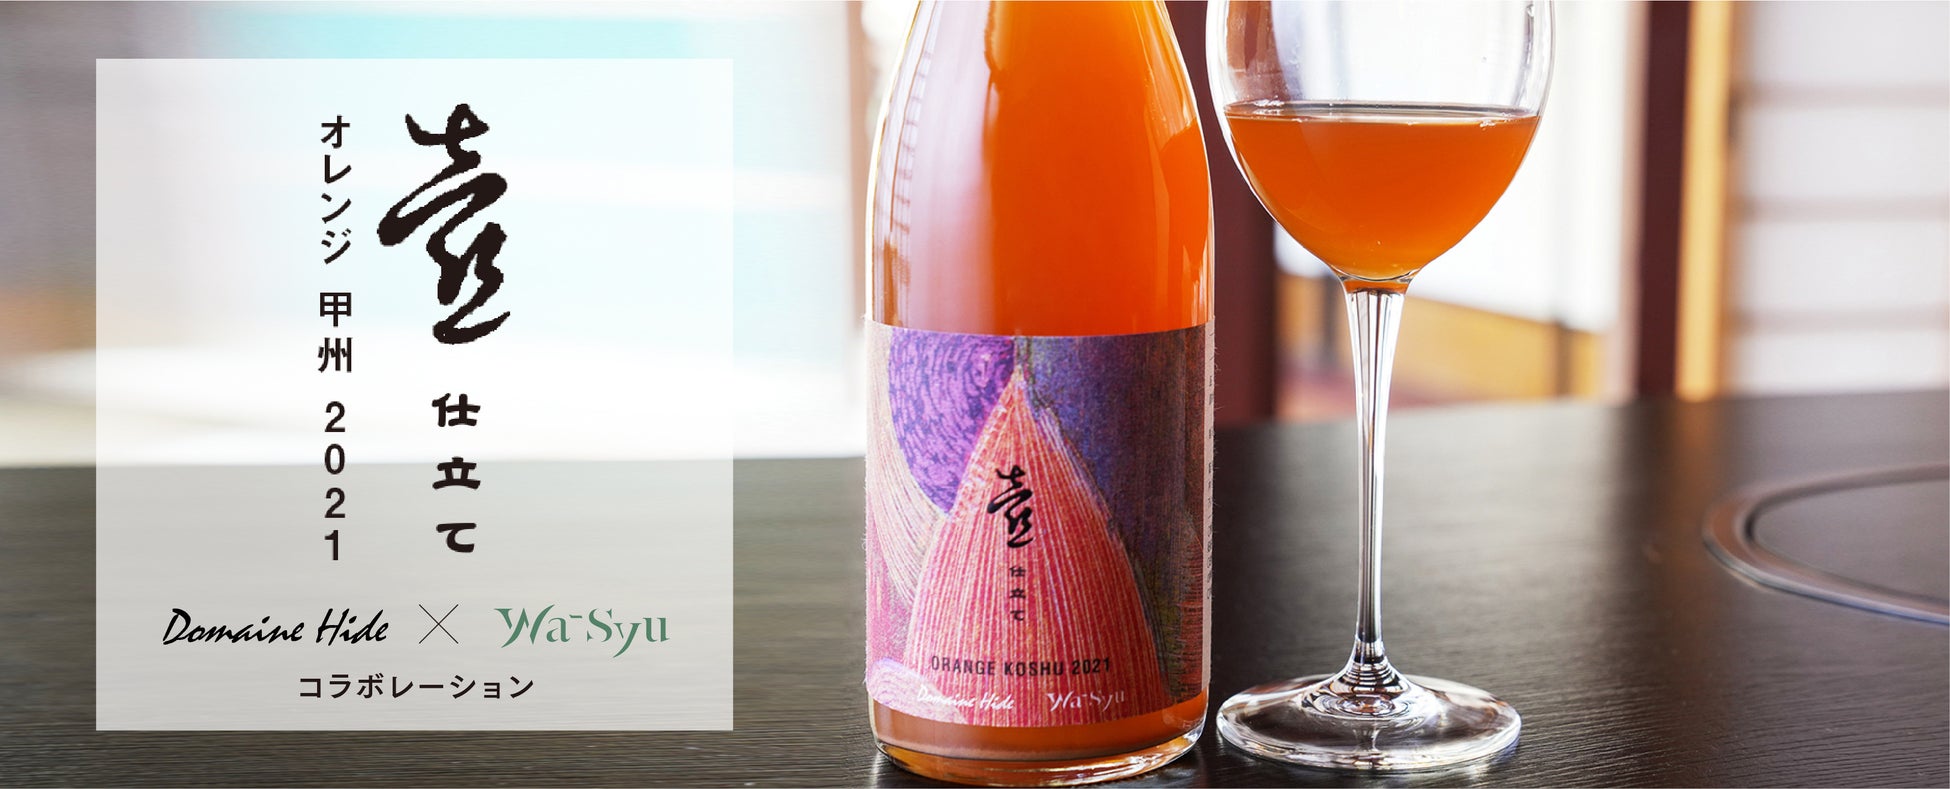 ドメーヌヒデ × wa-syu のコラボレーションワイン「壺仕立て オレンジ 甲州 2021」日本初の「呼吸する陶器の壺」が、新たな味わいを醸し出す！